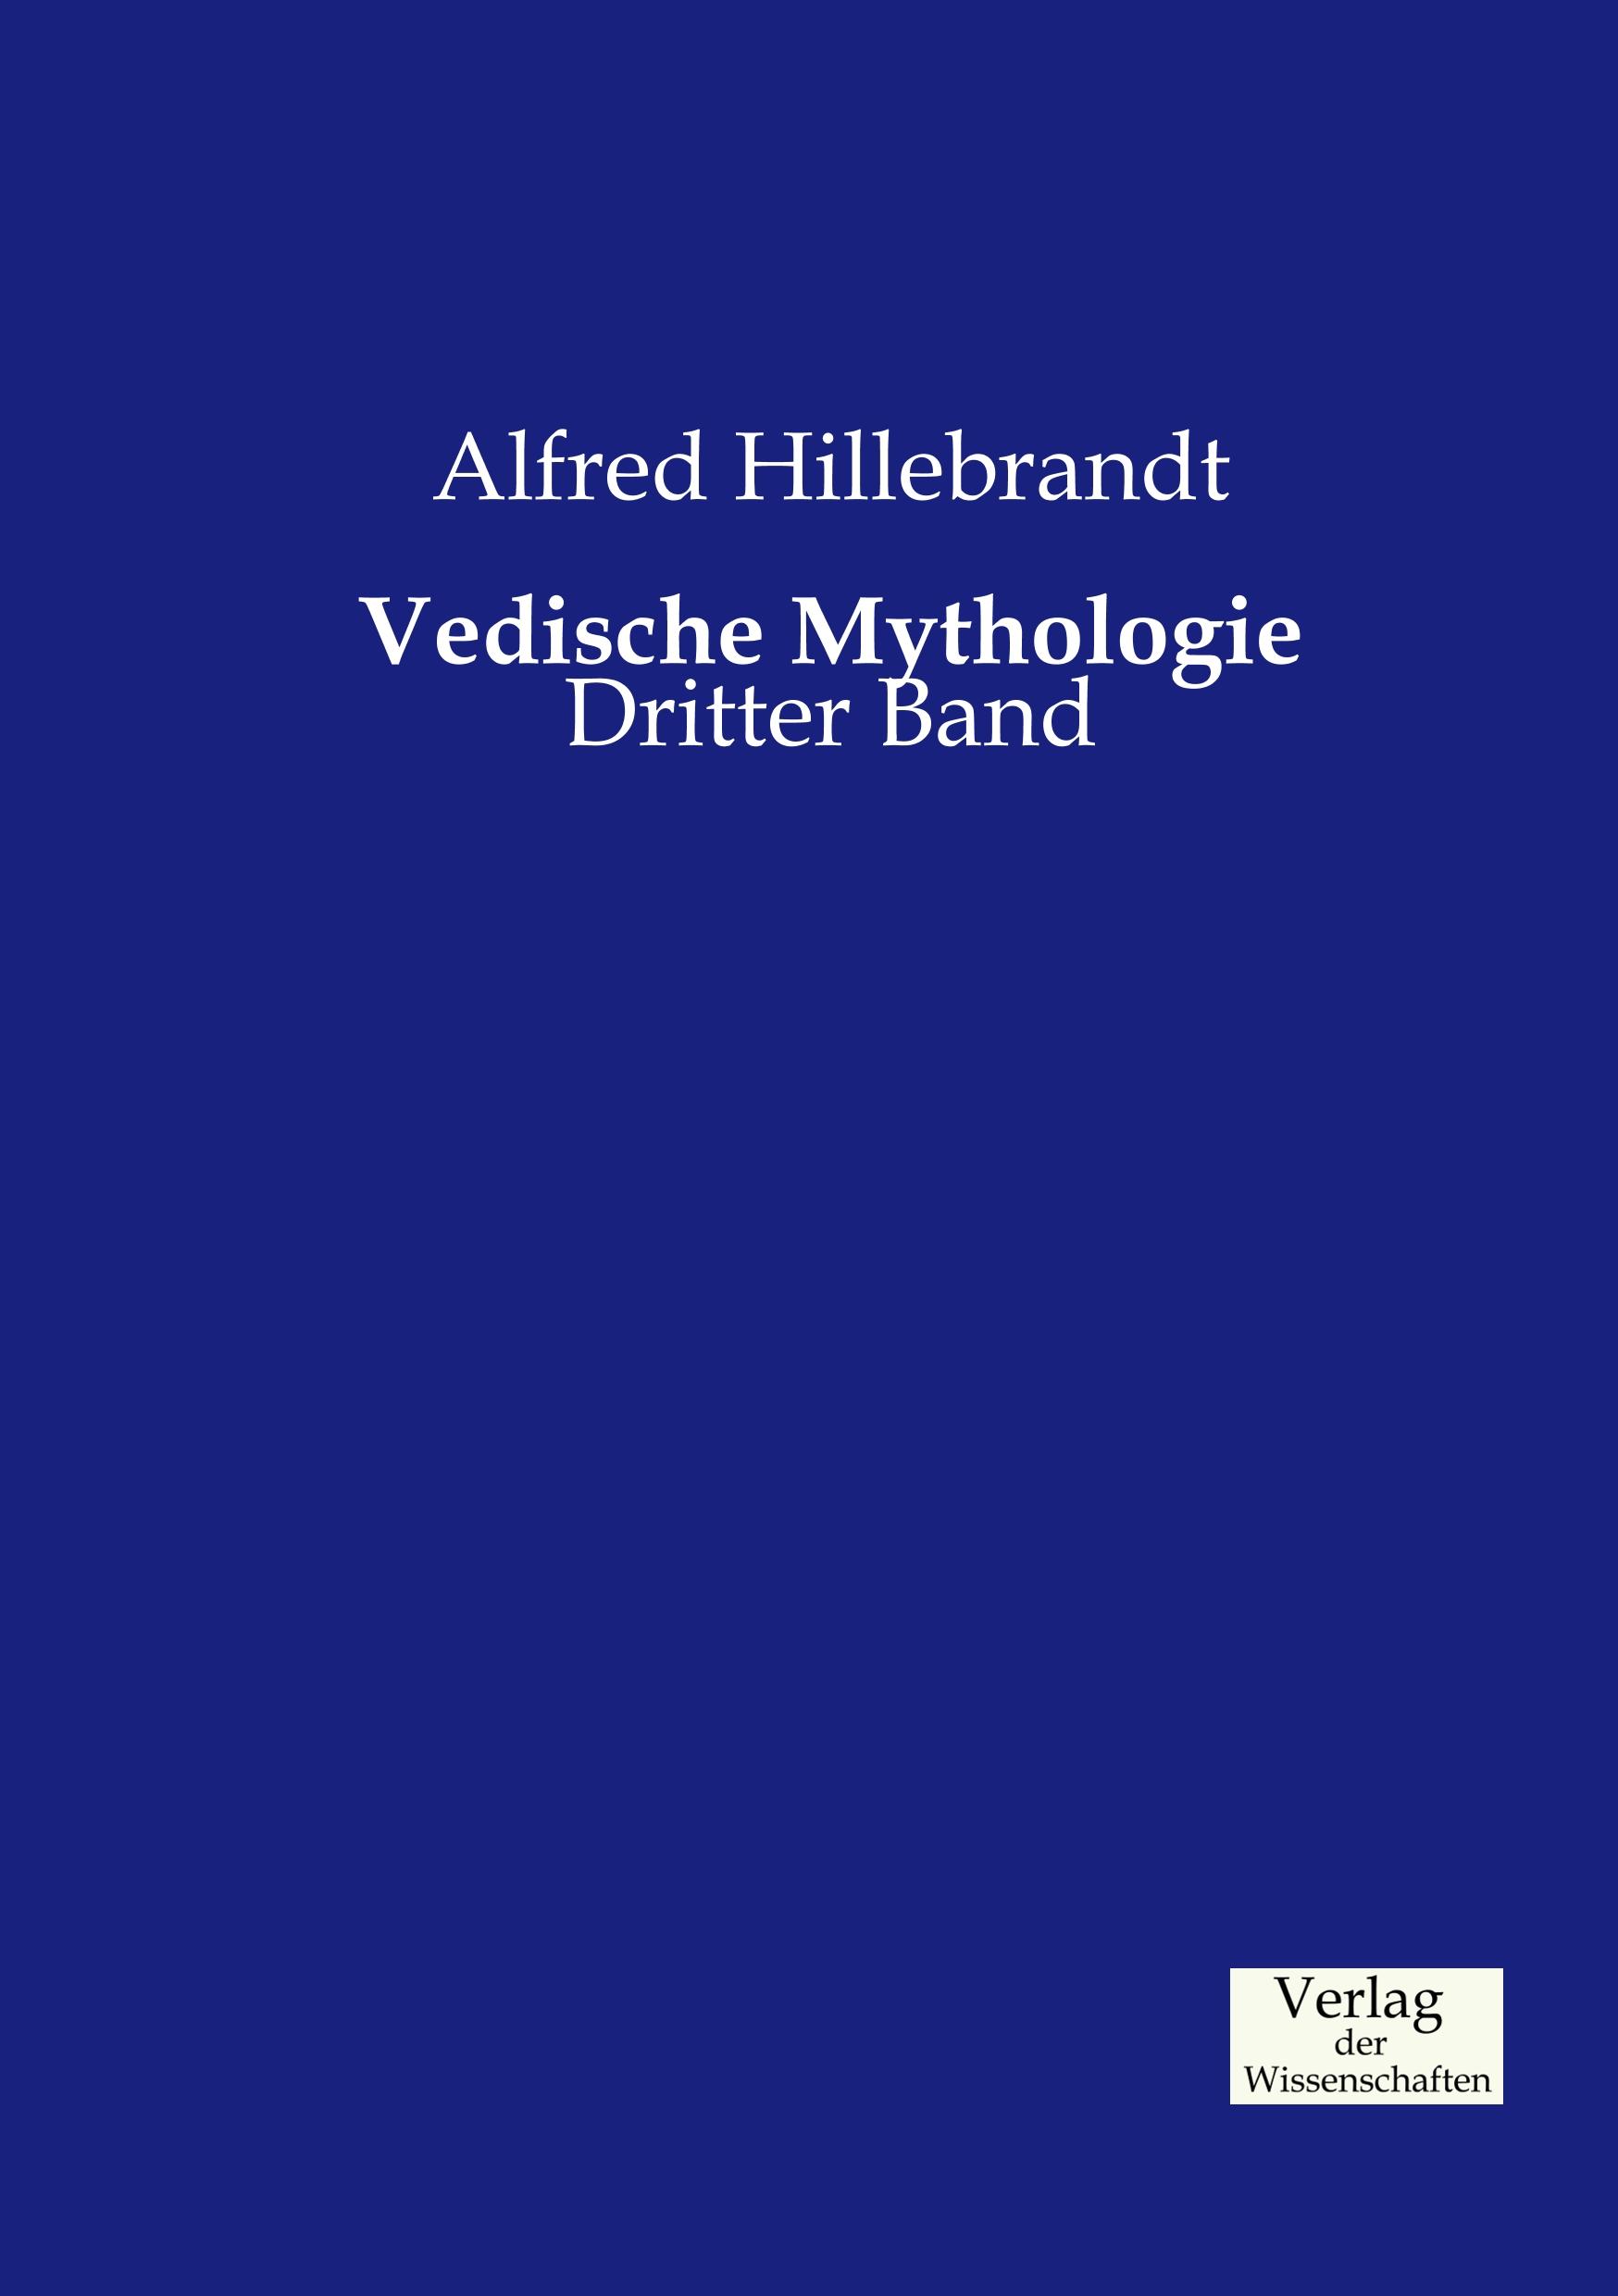 Vedische Mythologie / Dritter Band / Alfred Hillebrandt / Taschenbuch / Paperback / 492 S. / Deutsch / 2019 / Vero Verlag / EAN 9783957004383 - Hillebrandt, Alfred